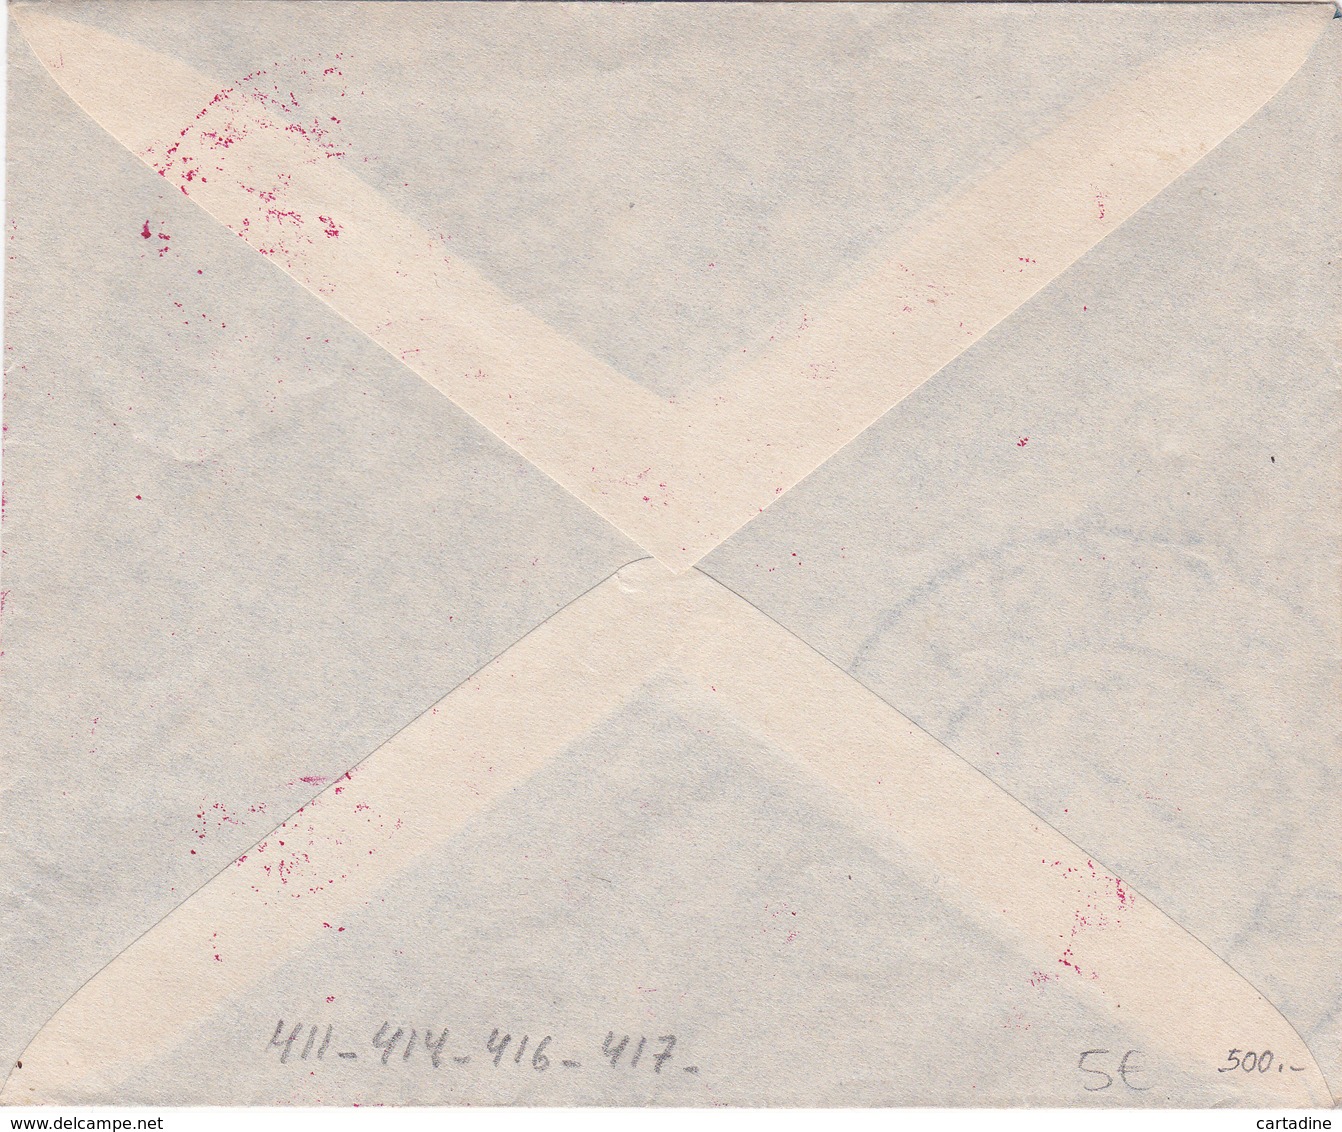 Lettre Yougoslavie - Timbres N° 411 - 414 - 416 Et 417 -  Année 1945 - Lettres & Documents